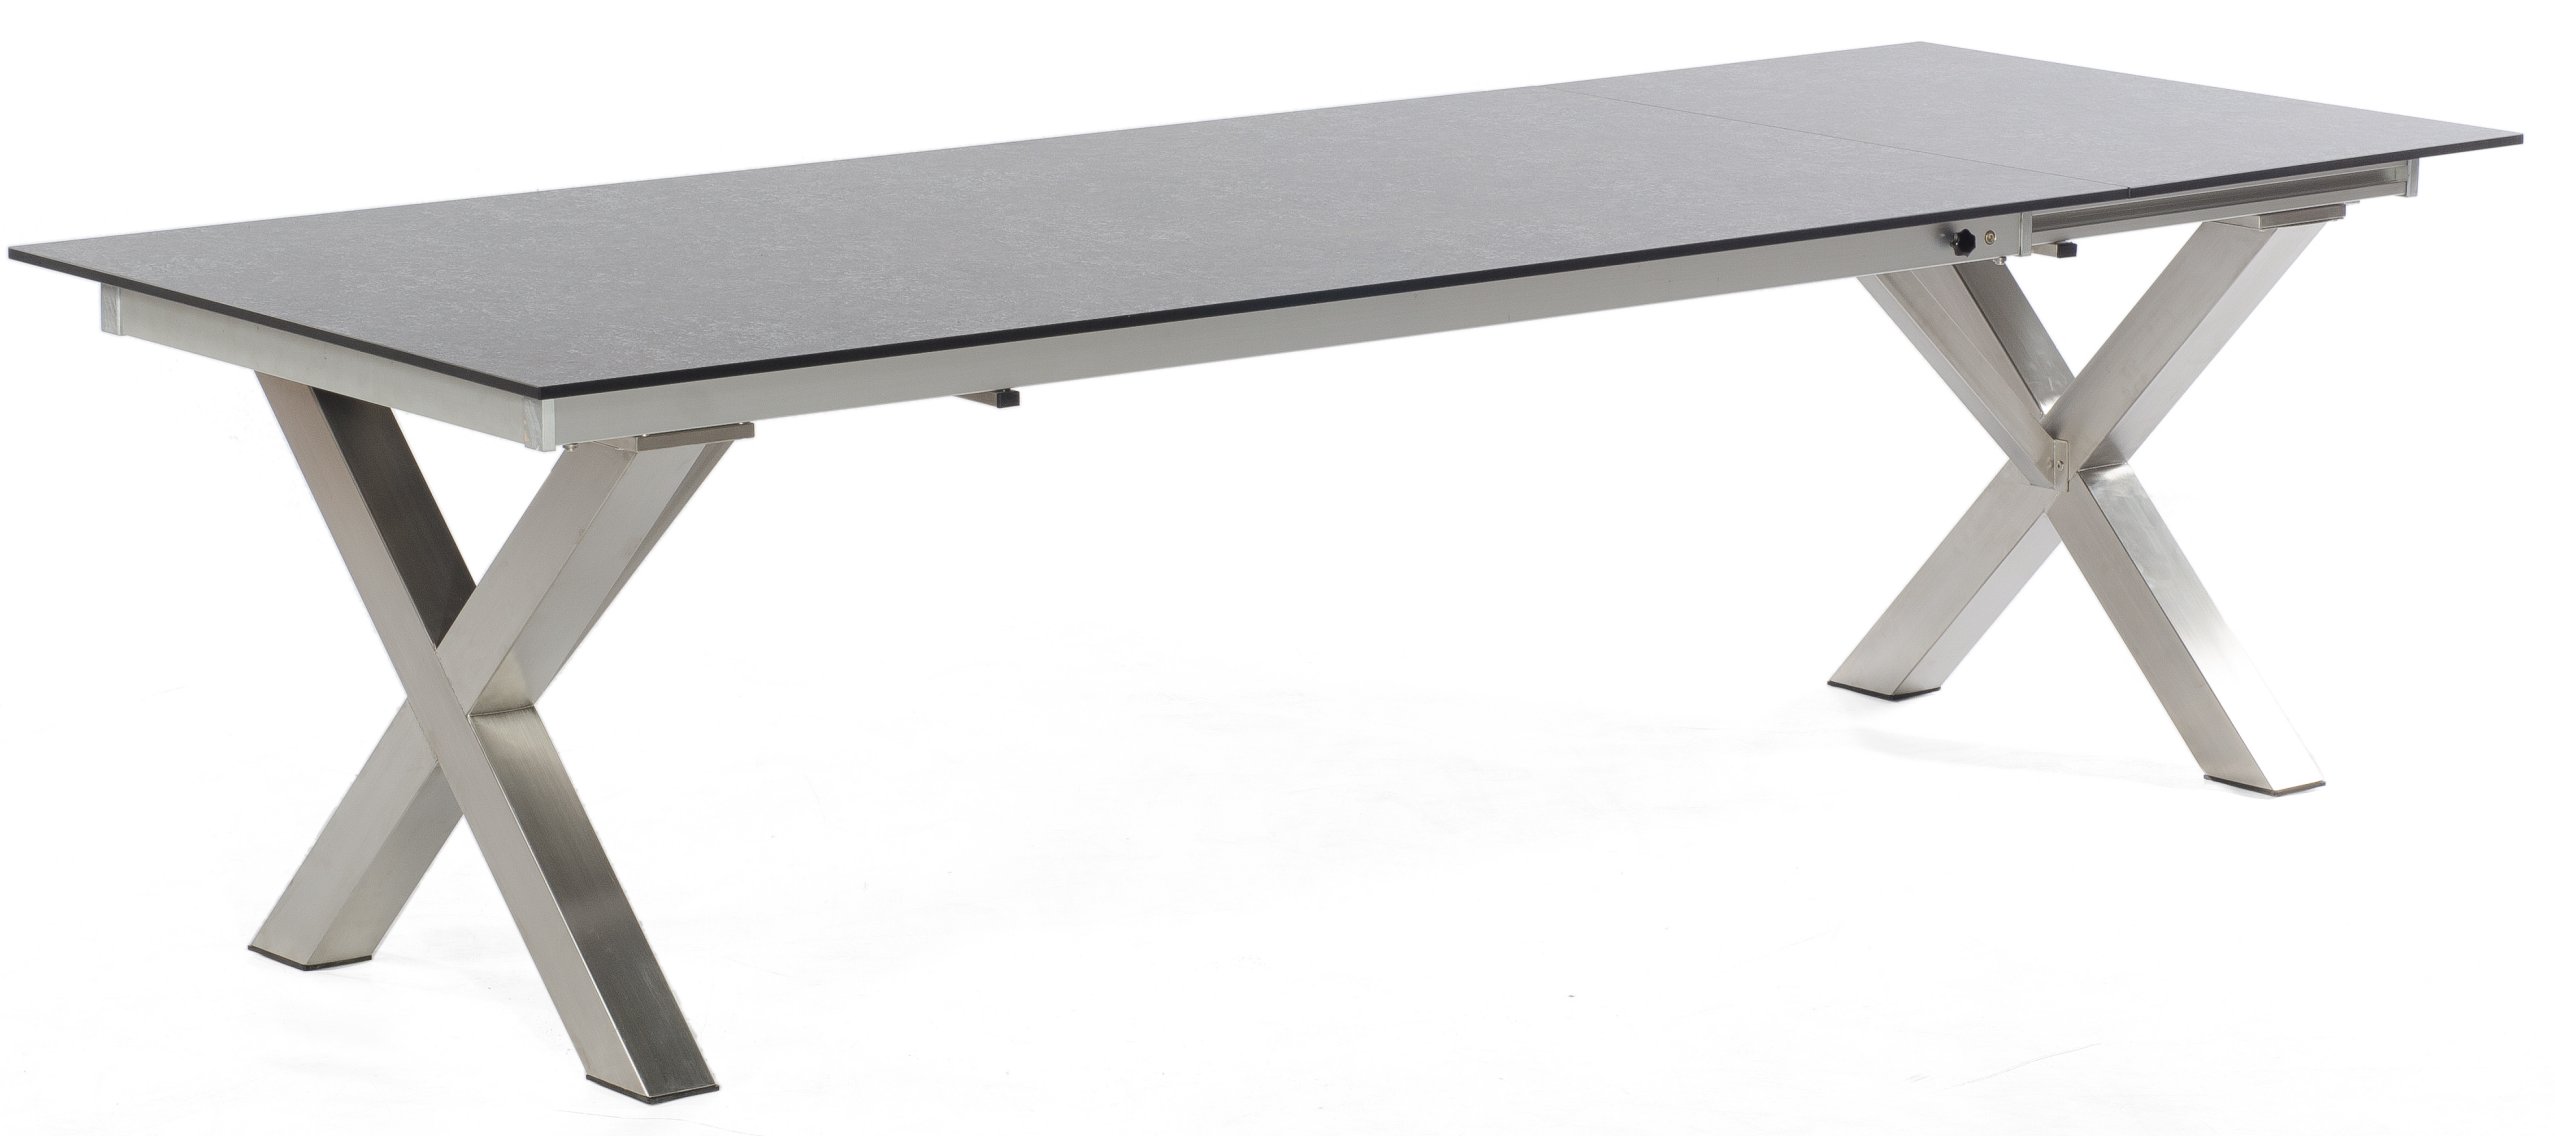 wetterfester ausziehbarer Gartentisch stabil X-Gestell anthrazit witterungsbeständige Tischplatte